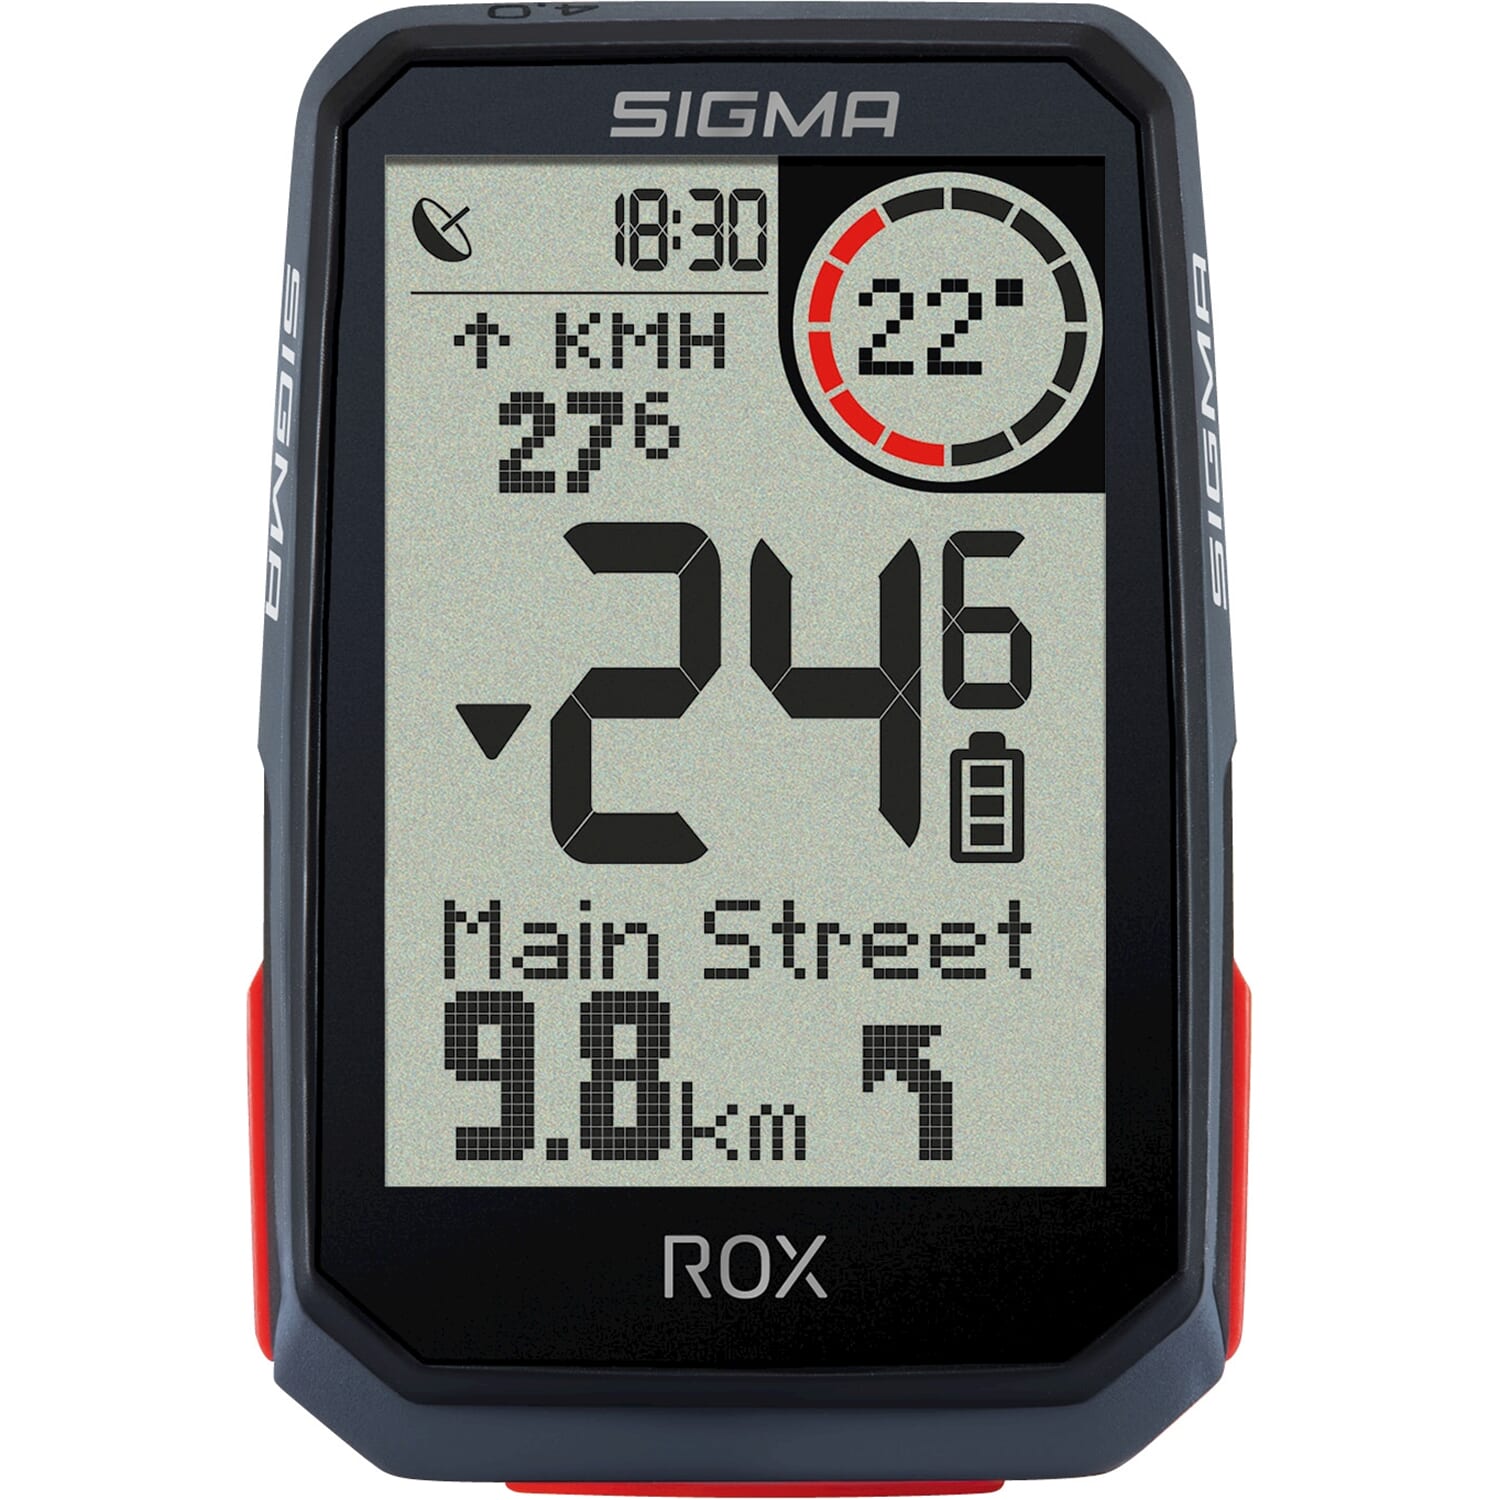 Split Interactie Oranje Sigma ROX 4.0 GPS Black HR + sensoren top mount set bij Kemperfietsen.nl